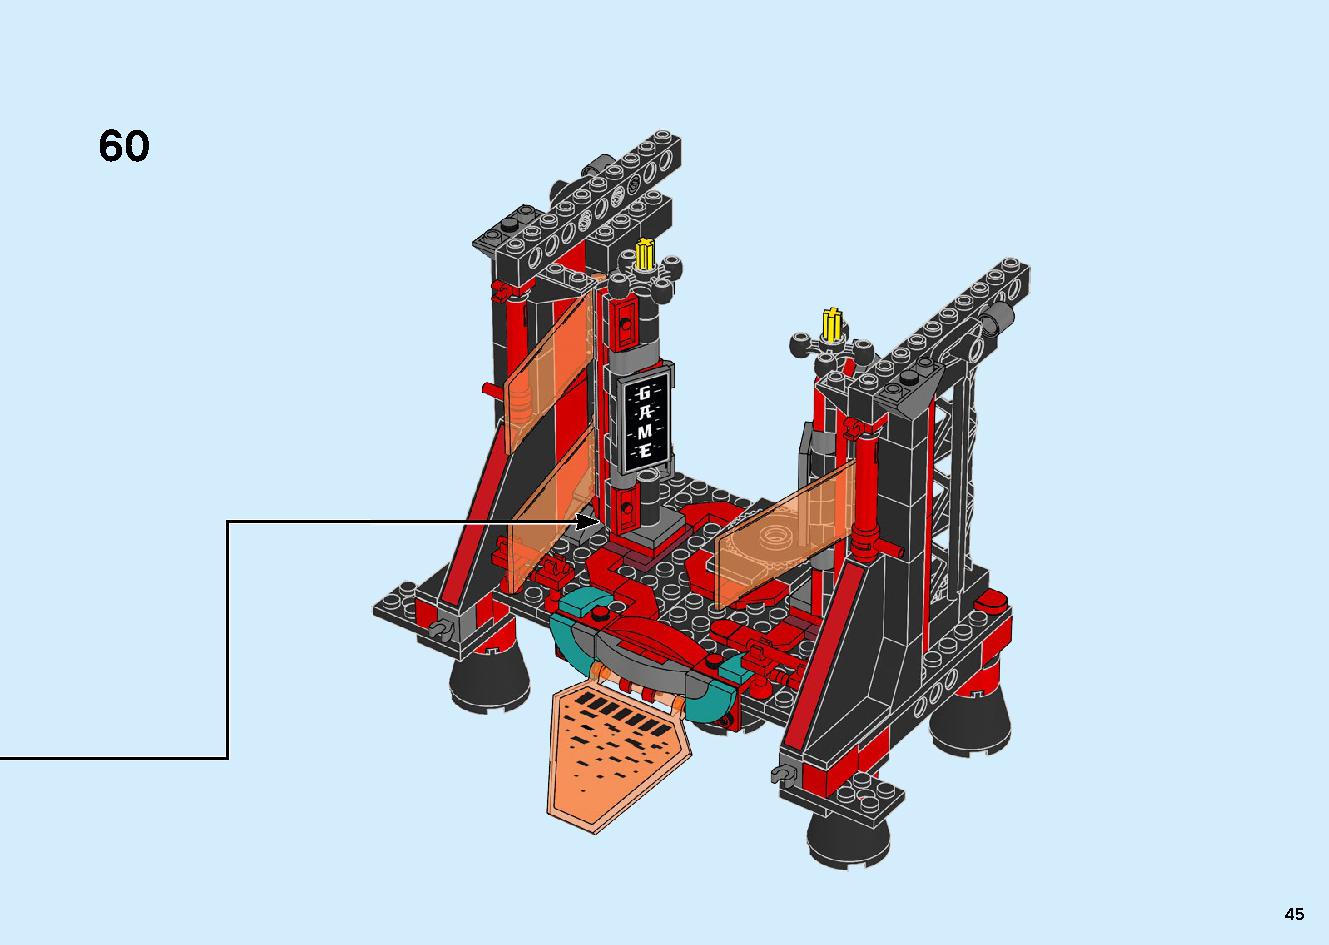 マッドキング神殿 71712 レゴの商品情報 レゴの説明書・組立方法 45 page